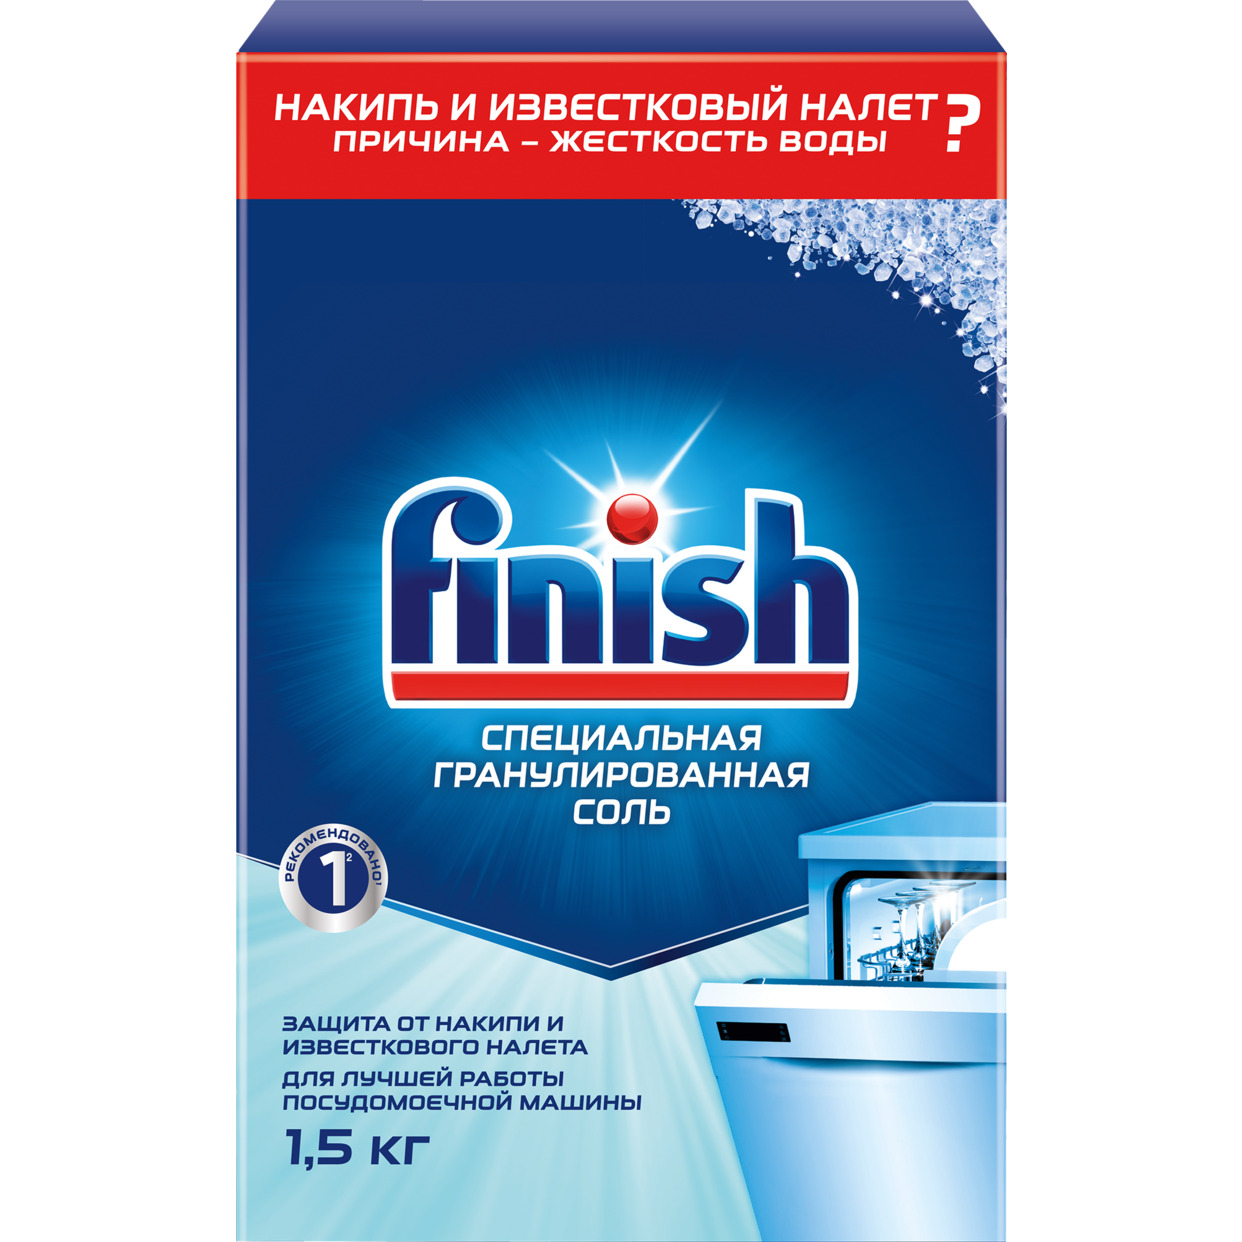 Соль для посудомоечных машин Finish 1,5 кг по акции в Пятерочке